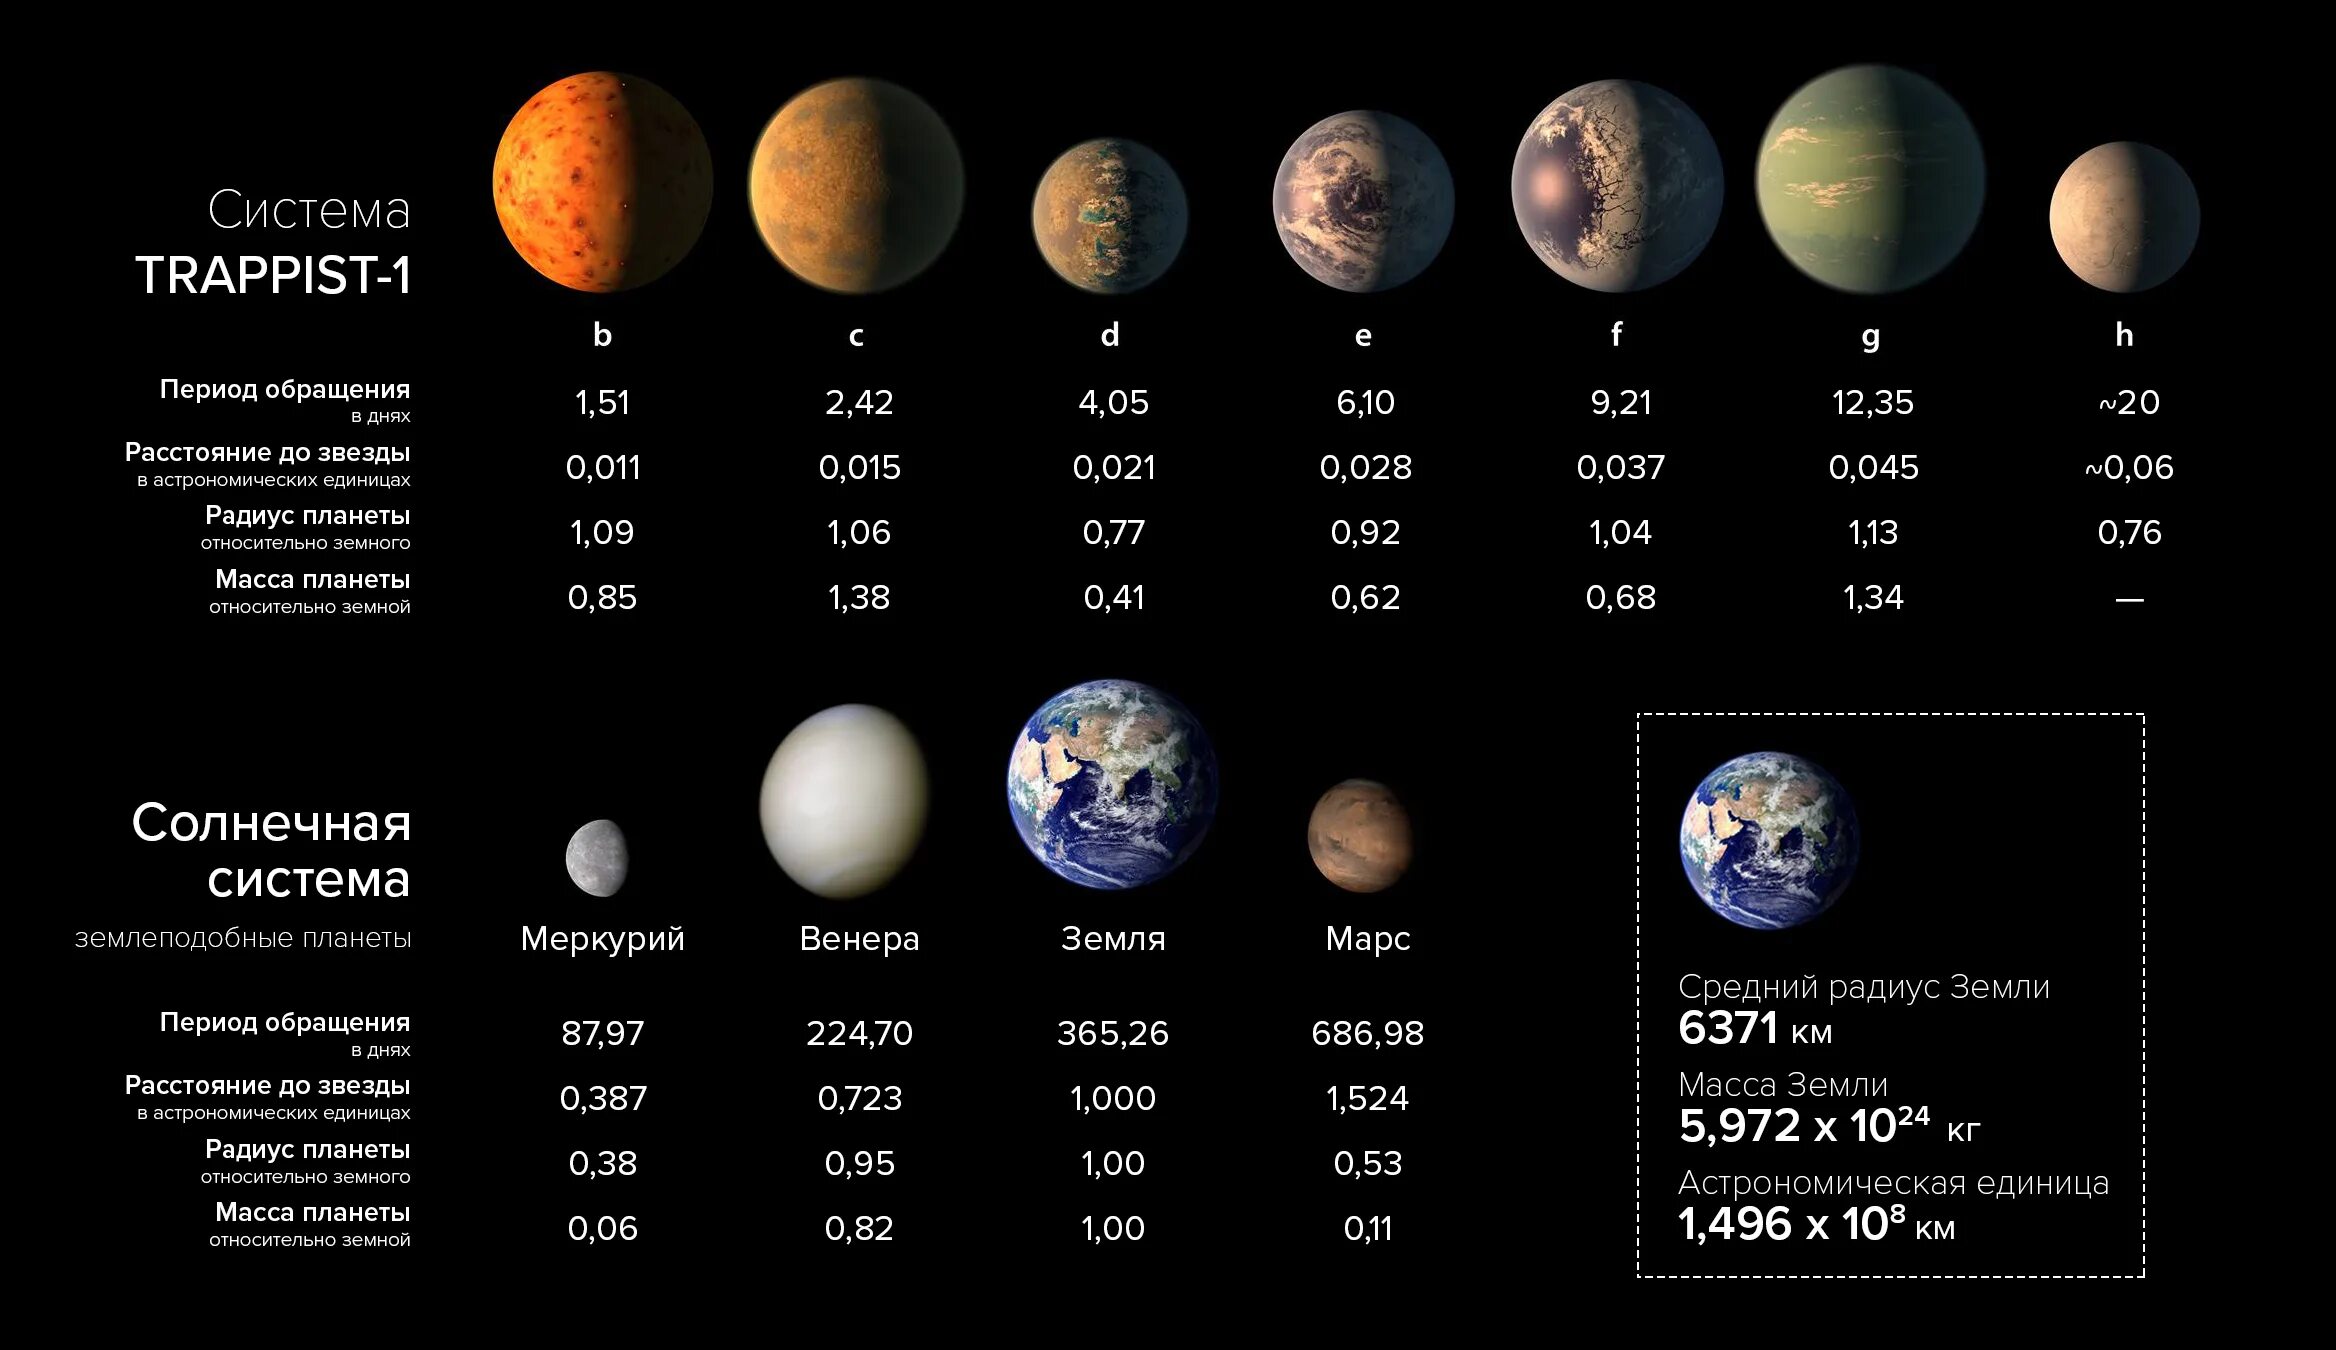 Масса планет меньше земли. Размеры планет солнечной системы таблица. Планеты гиганты солнечной системы по порядку. Солнечная система по размерам планет.